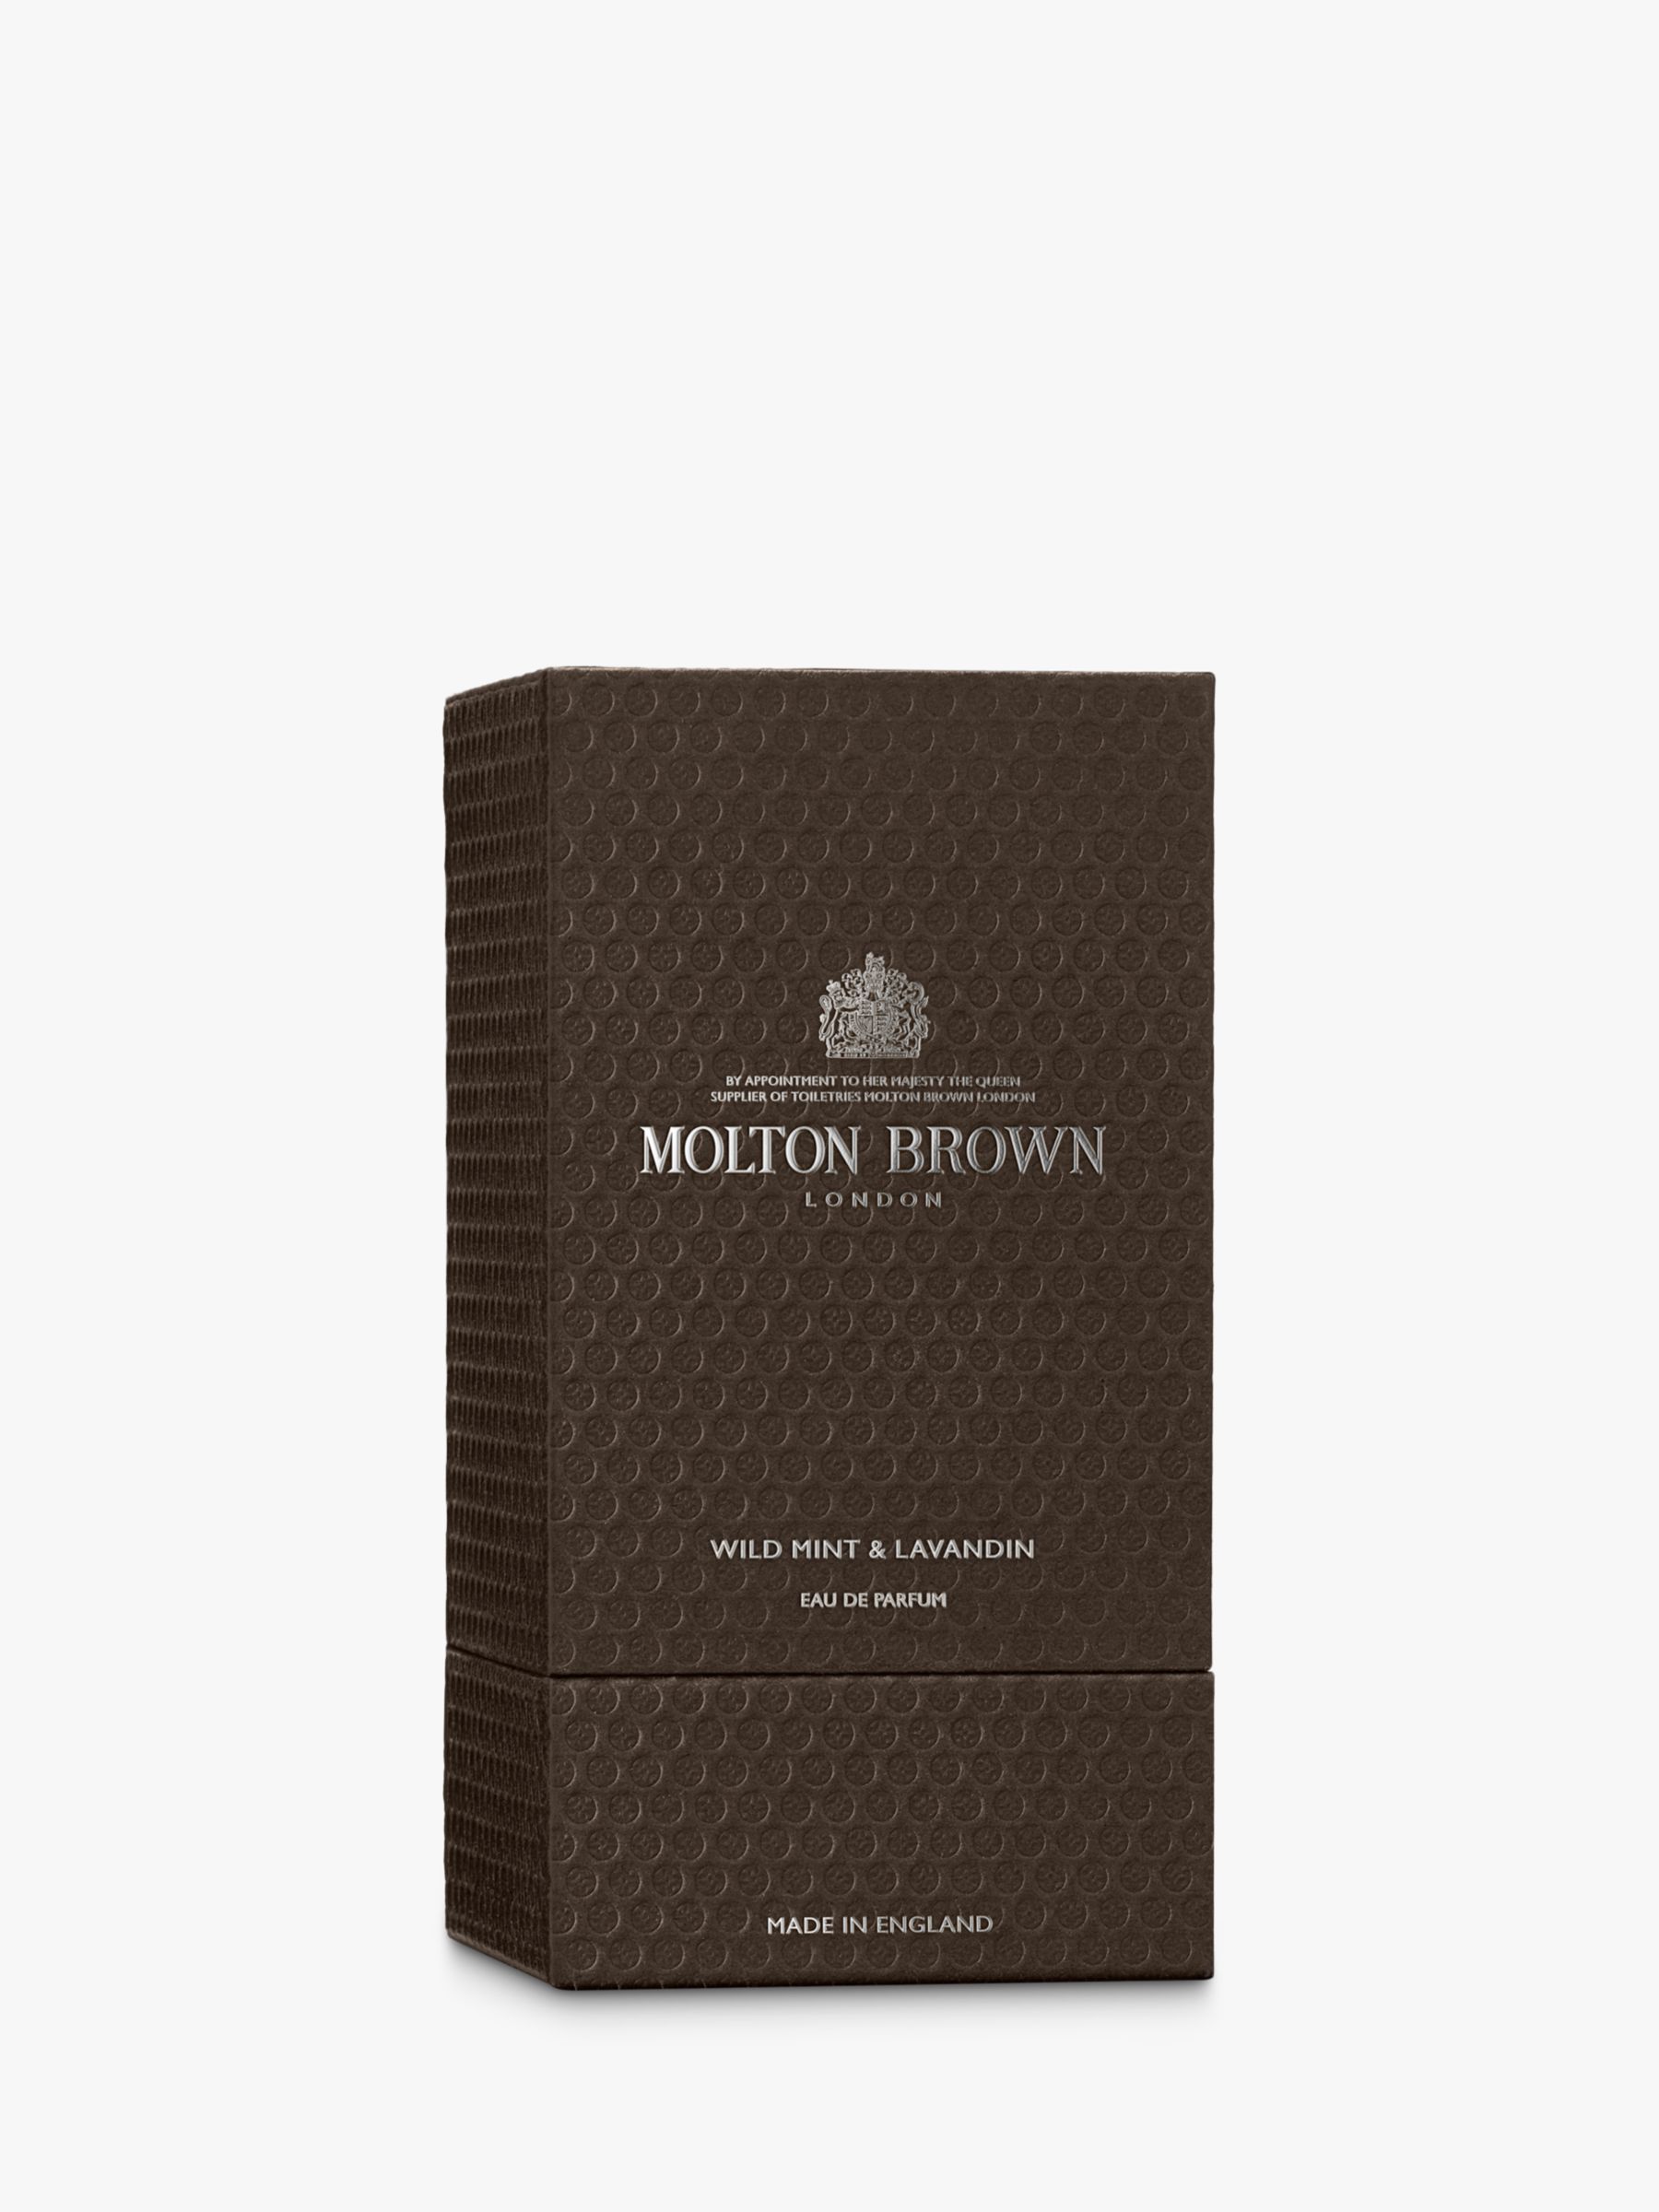 Molton Brown Wild Mint & Lavandin Eau de Parfum, 100ml 3